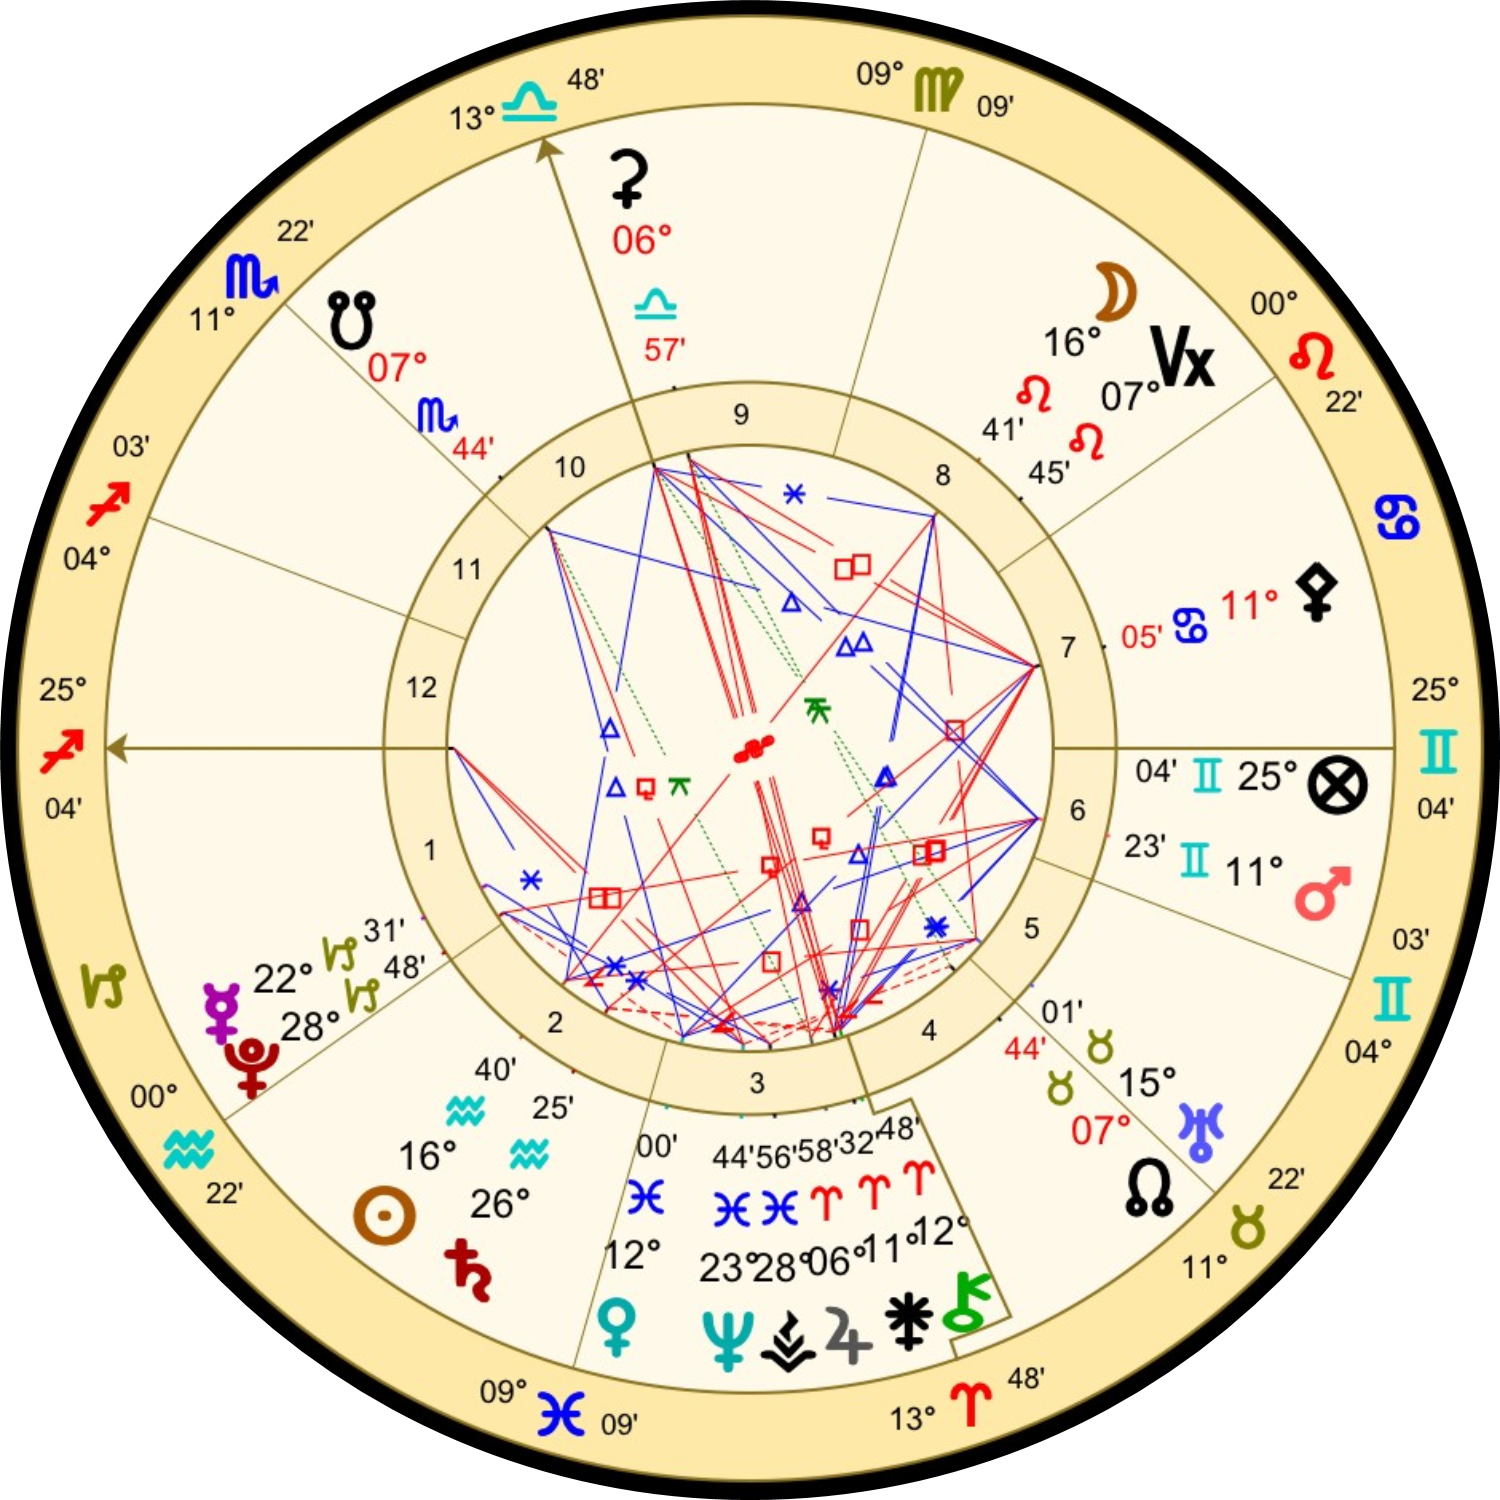 2月6日の獅子座の満月のホロスコープ解説画像